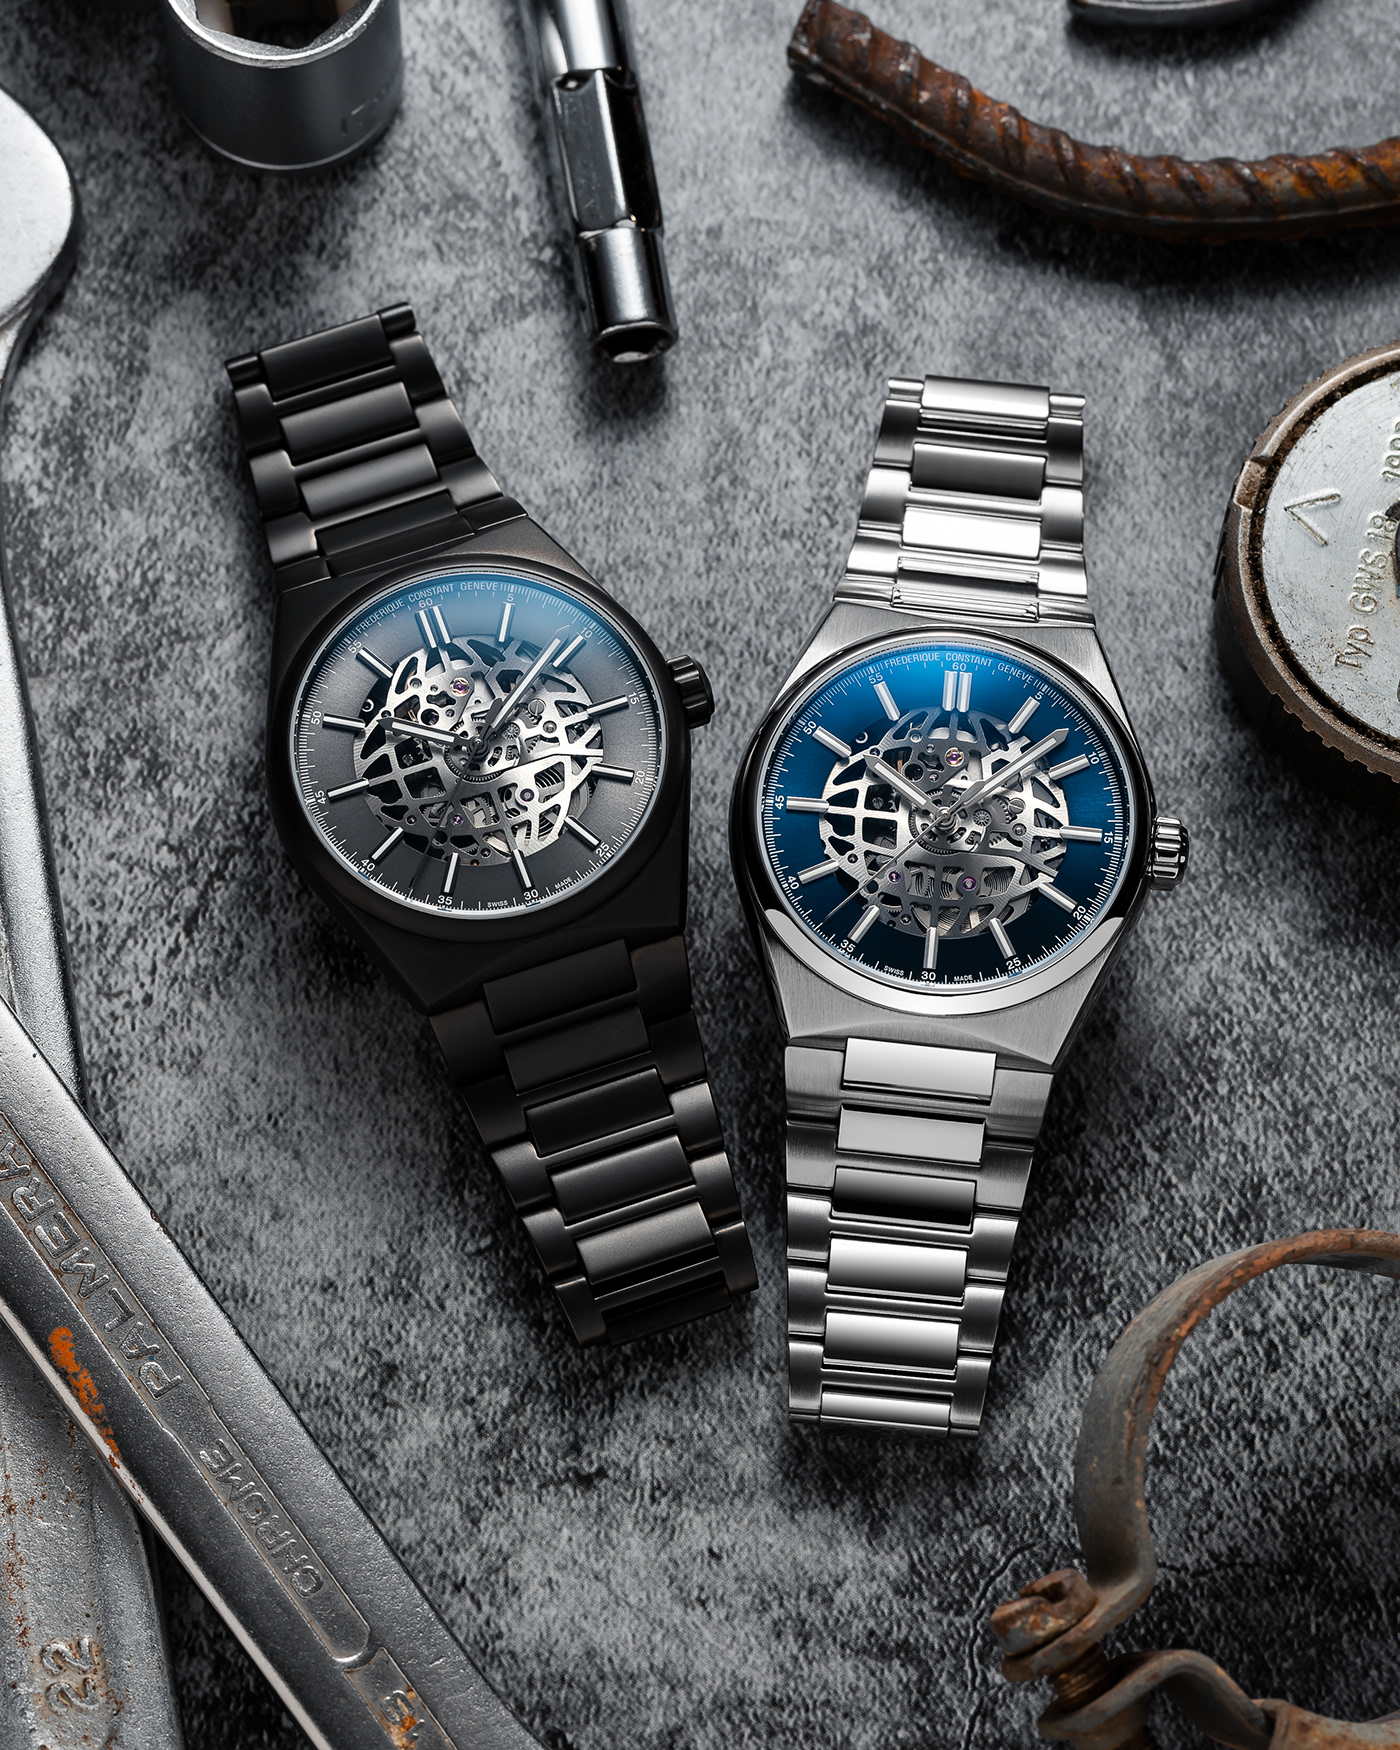 adobe lightroom Adobe Photoshop luxury watches Product Photography swiss watches watch photography Watches wristwatch